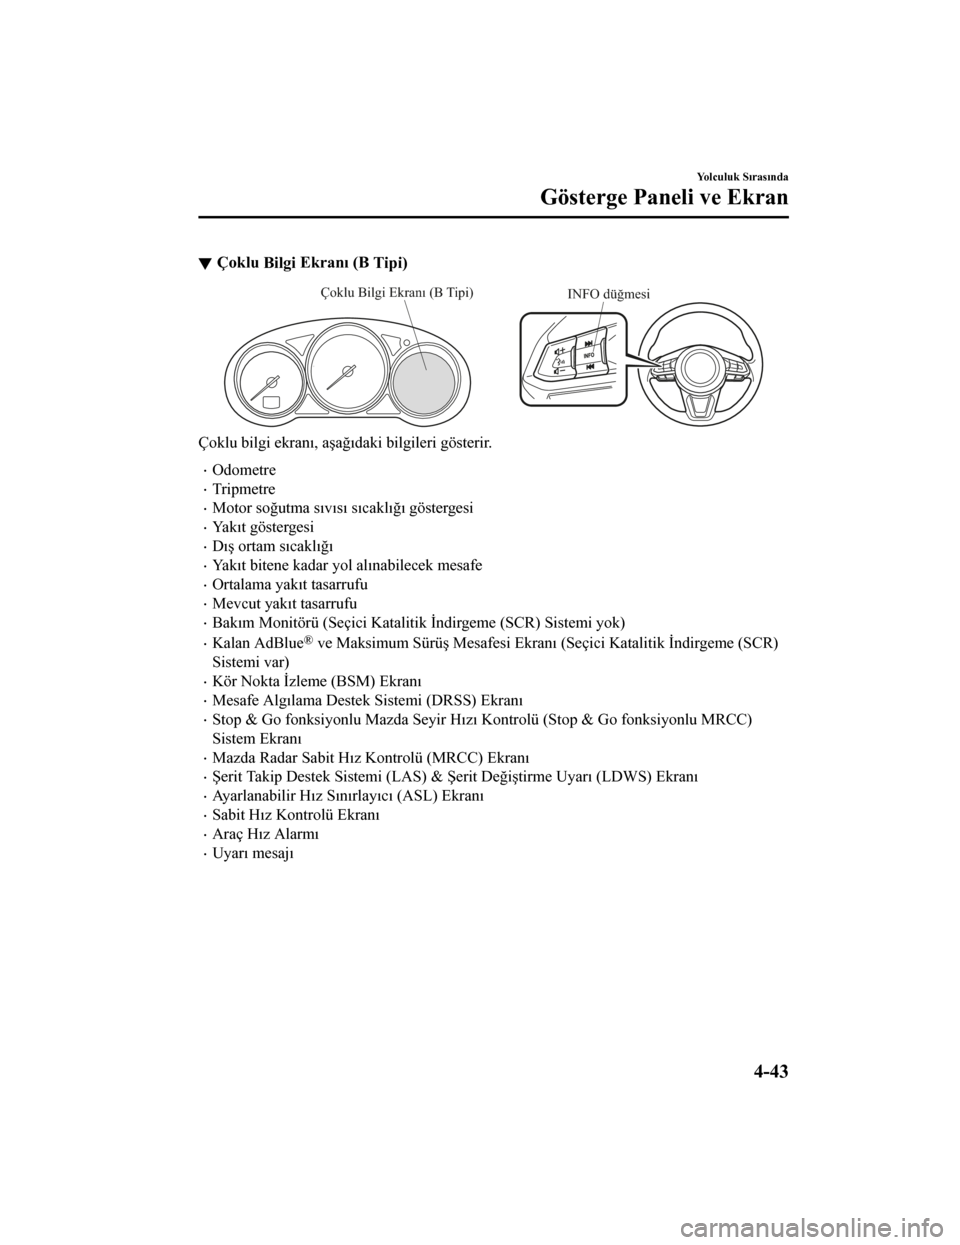 MAZDA MODEL CX-5 2019  Kullanım Kılavuzu (in Turkish) Çoklu B
tlg
t Ekranı (B 
T
tp
t)
INFO düğmesiÇoklu Bilgi Ekranı (B Tipi)
Çoklu b
tlg
t ekranı, aşağ ıdak
t b
tlg
tler
t göster
tr.
Odometre
Tr
tpmetre
Motor soğutma sıvısı sı